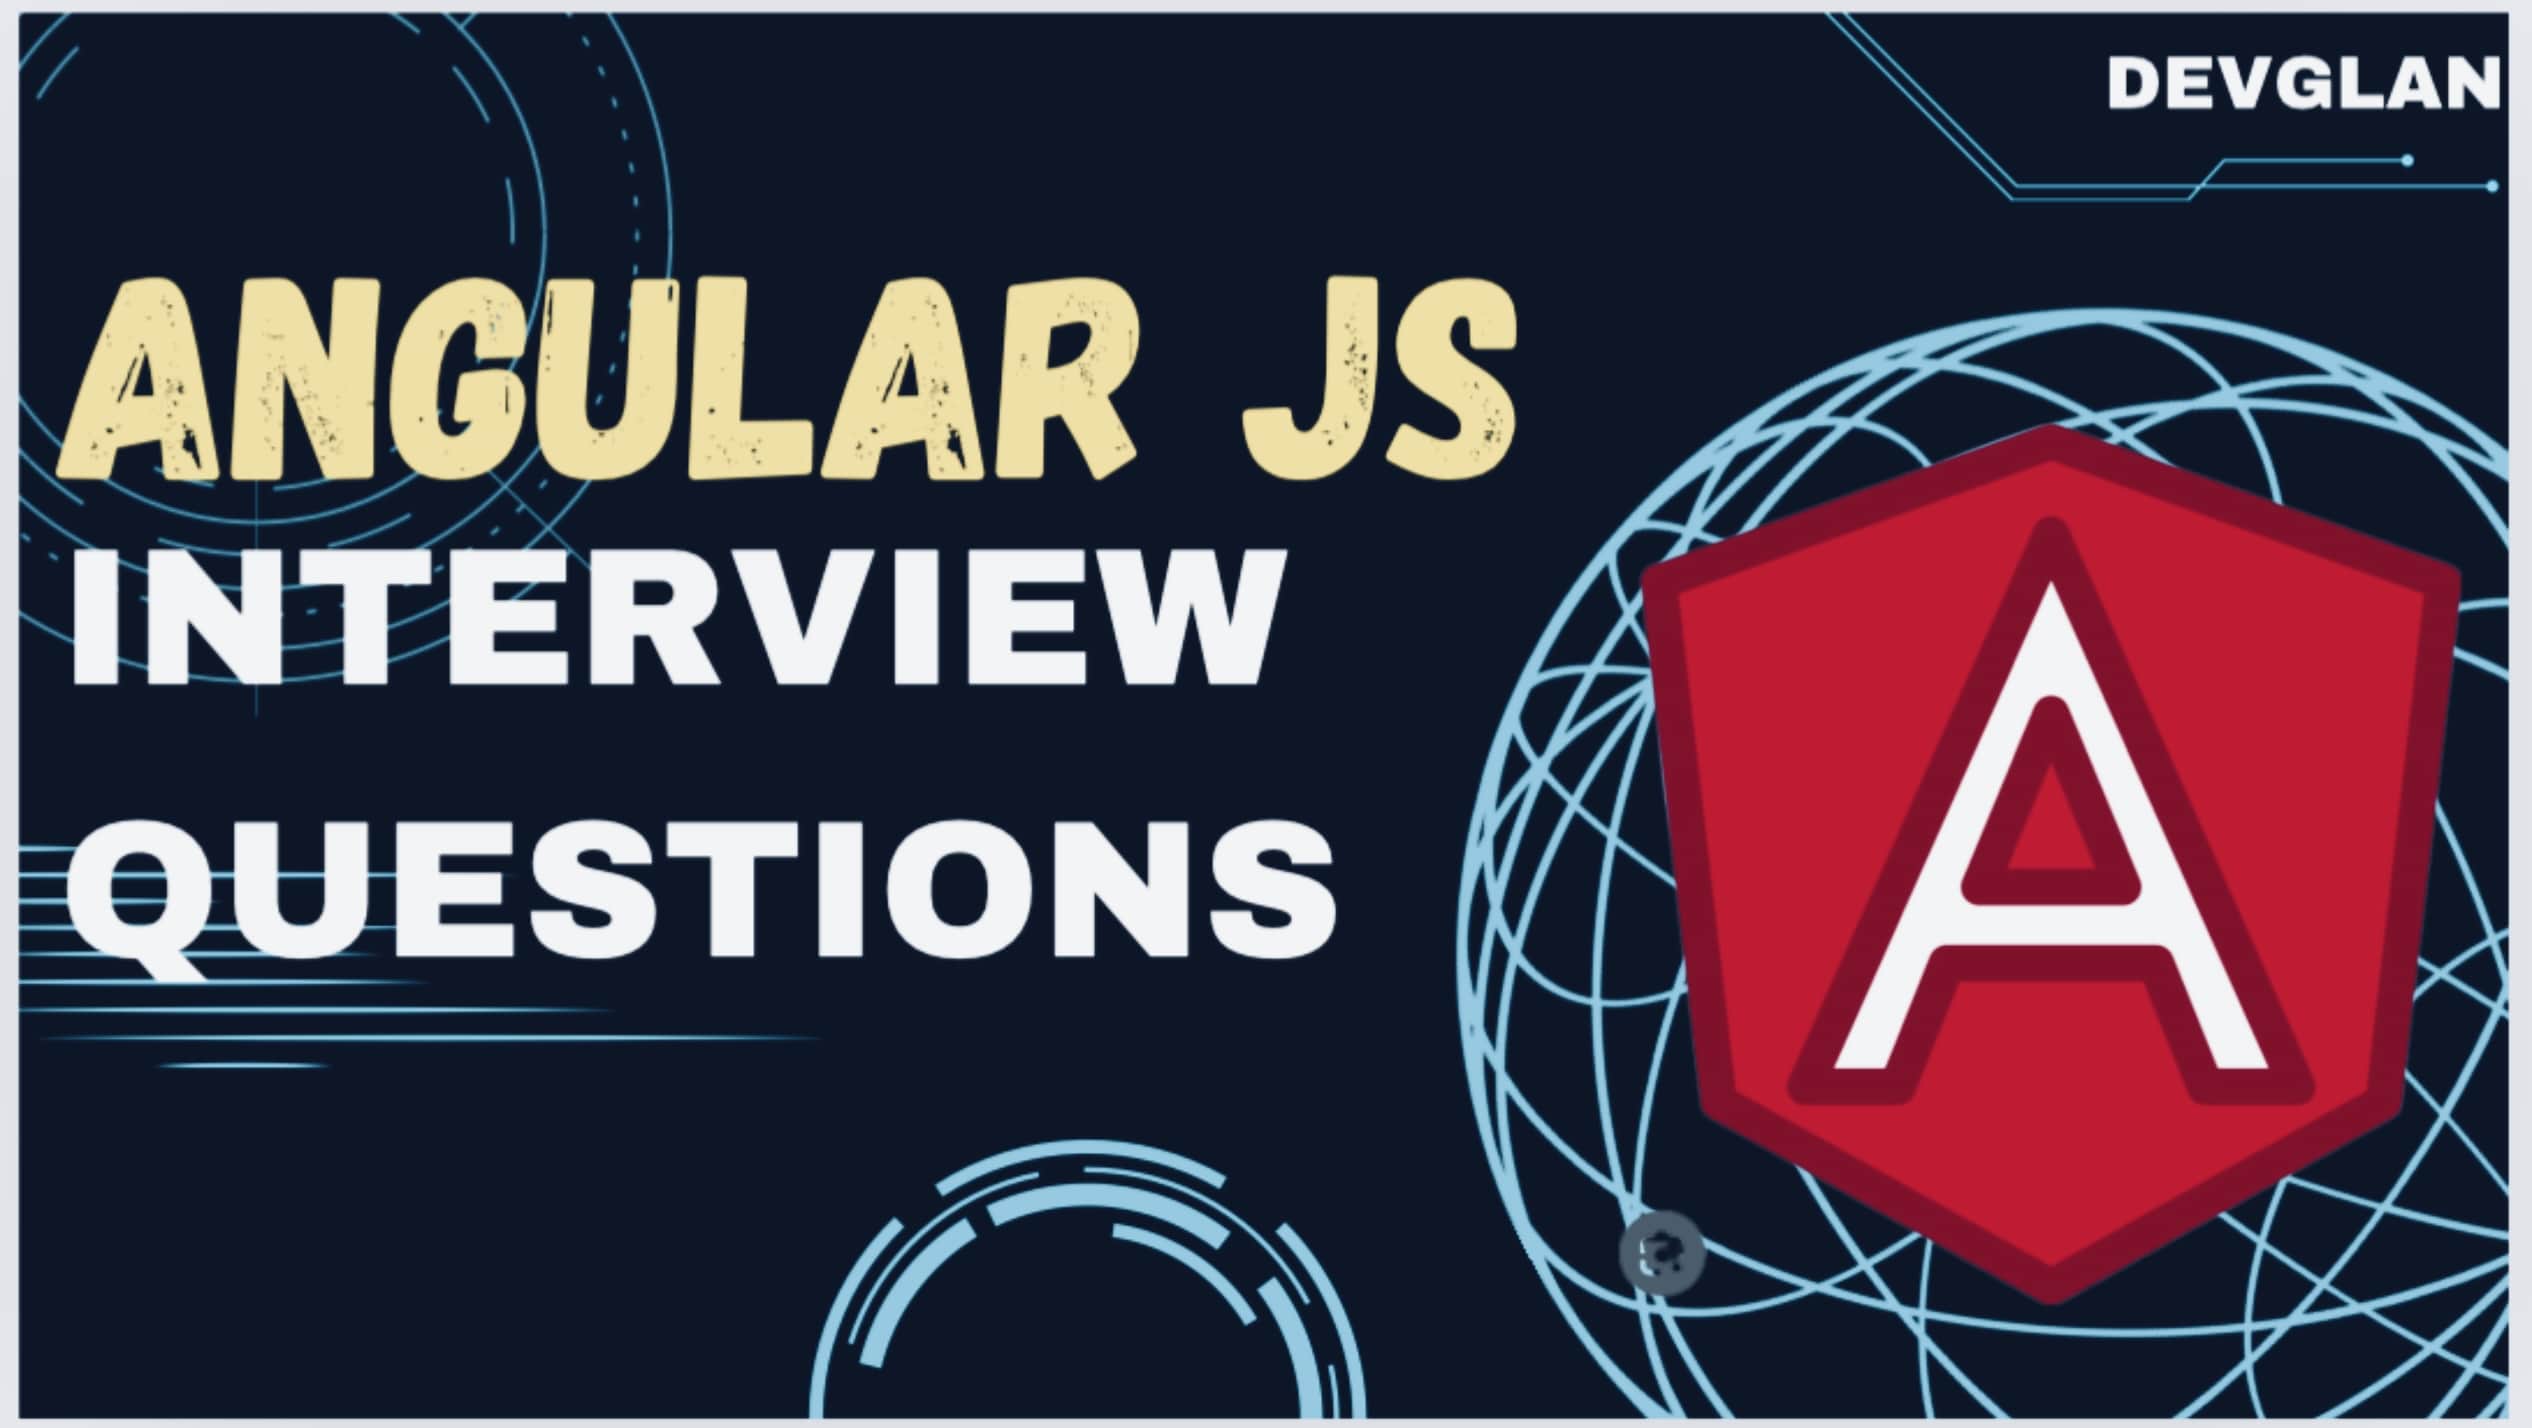 Angular JS Interview Questions-logo